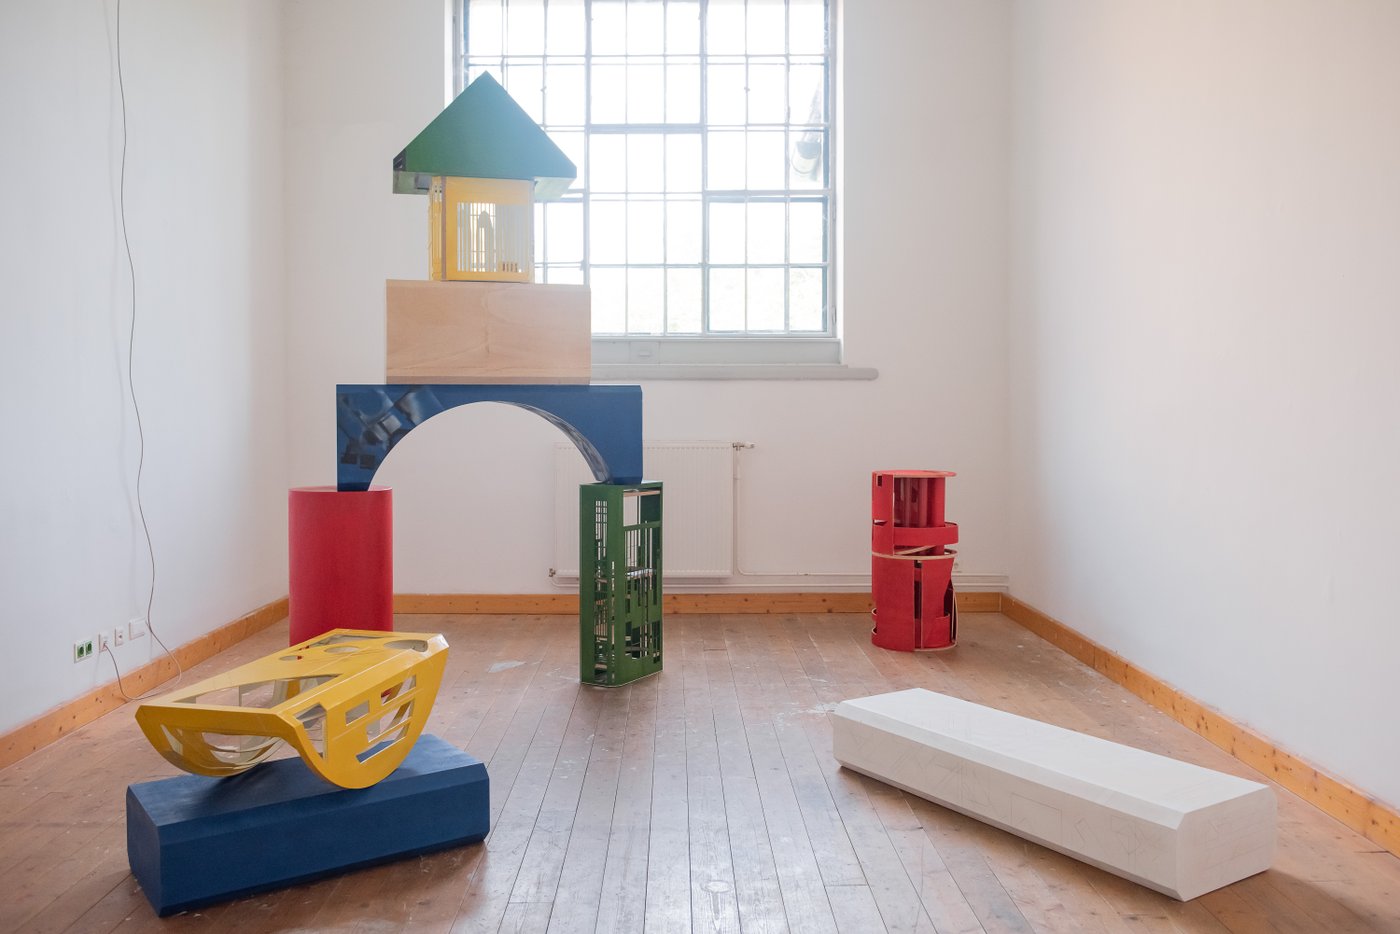 Ausstellungsansicht mit bunten großen Bauklötzen, die eine Art Kinderhaus ergeben